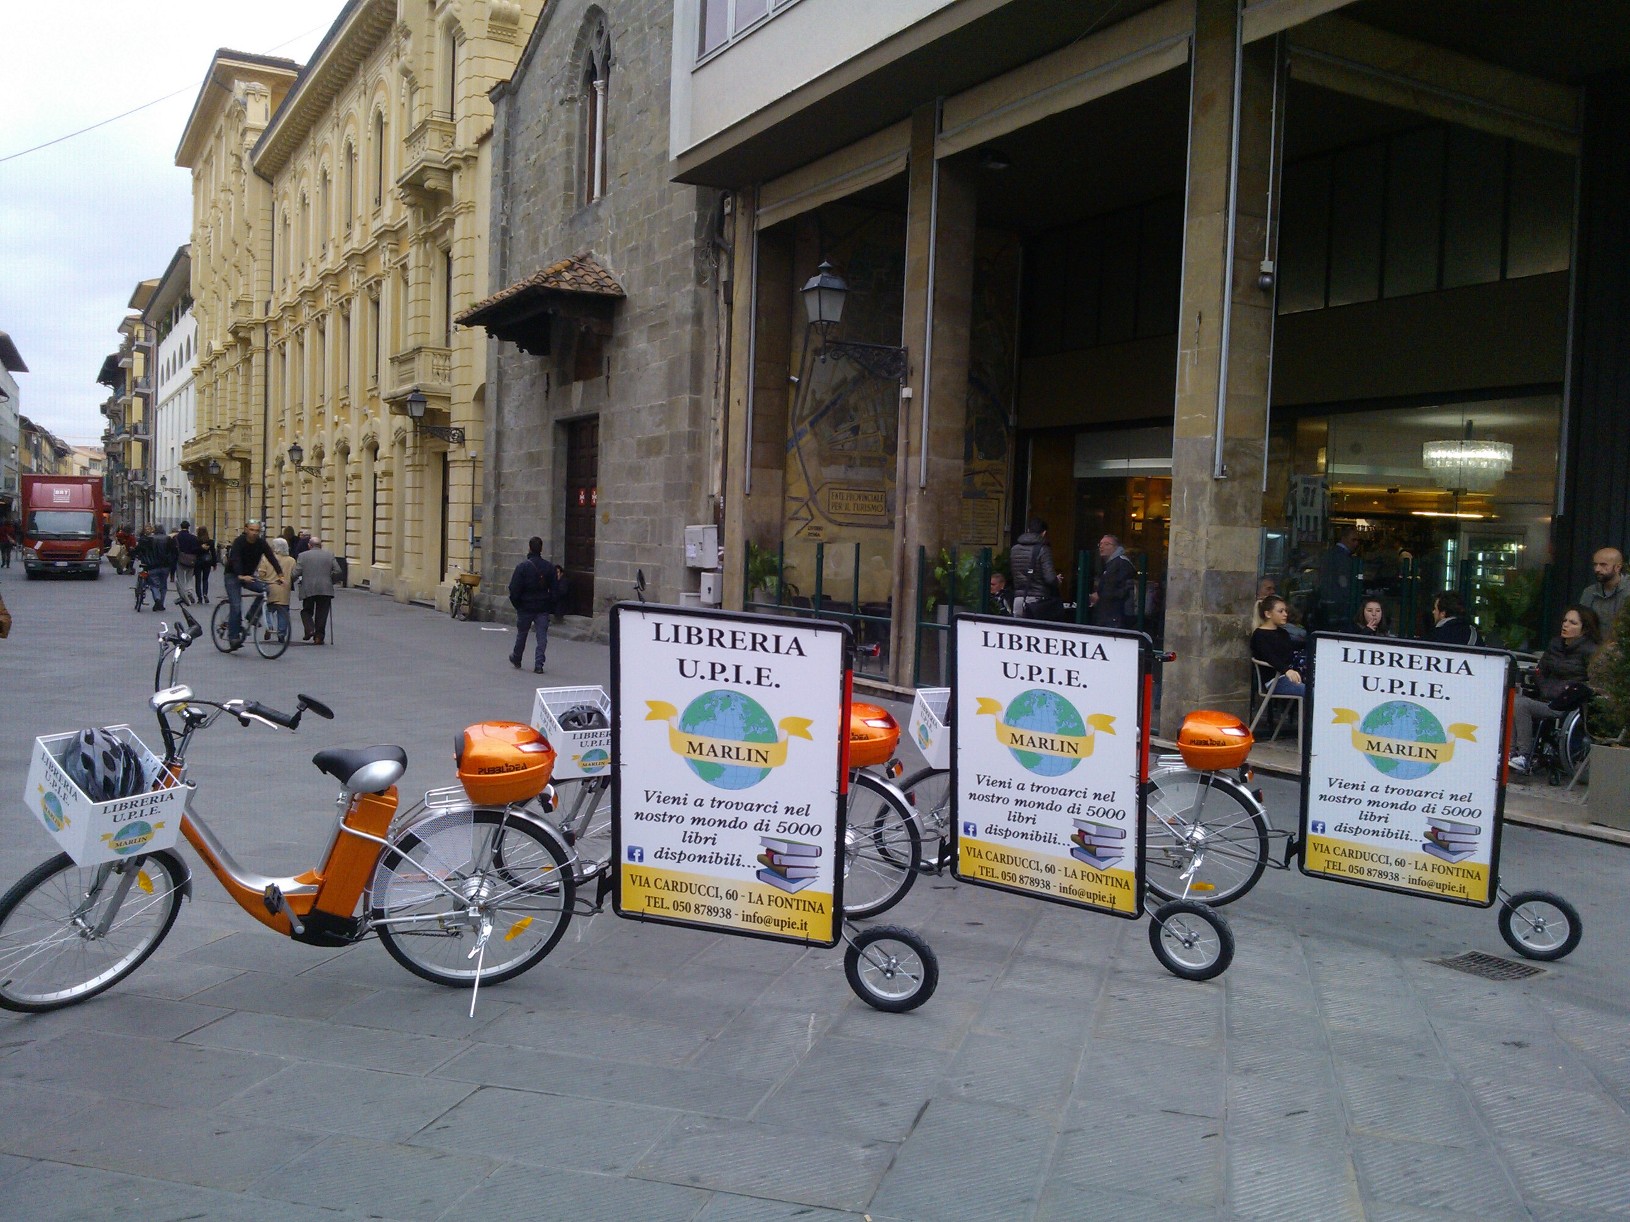 bici vela Pisa Lucca Livorno, bicicletta vela, bicicletta pubblicitaria, bici con carrello pubblicitario, bici pubblicità